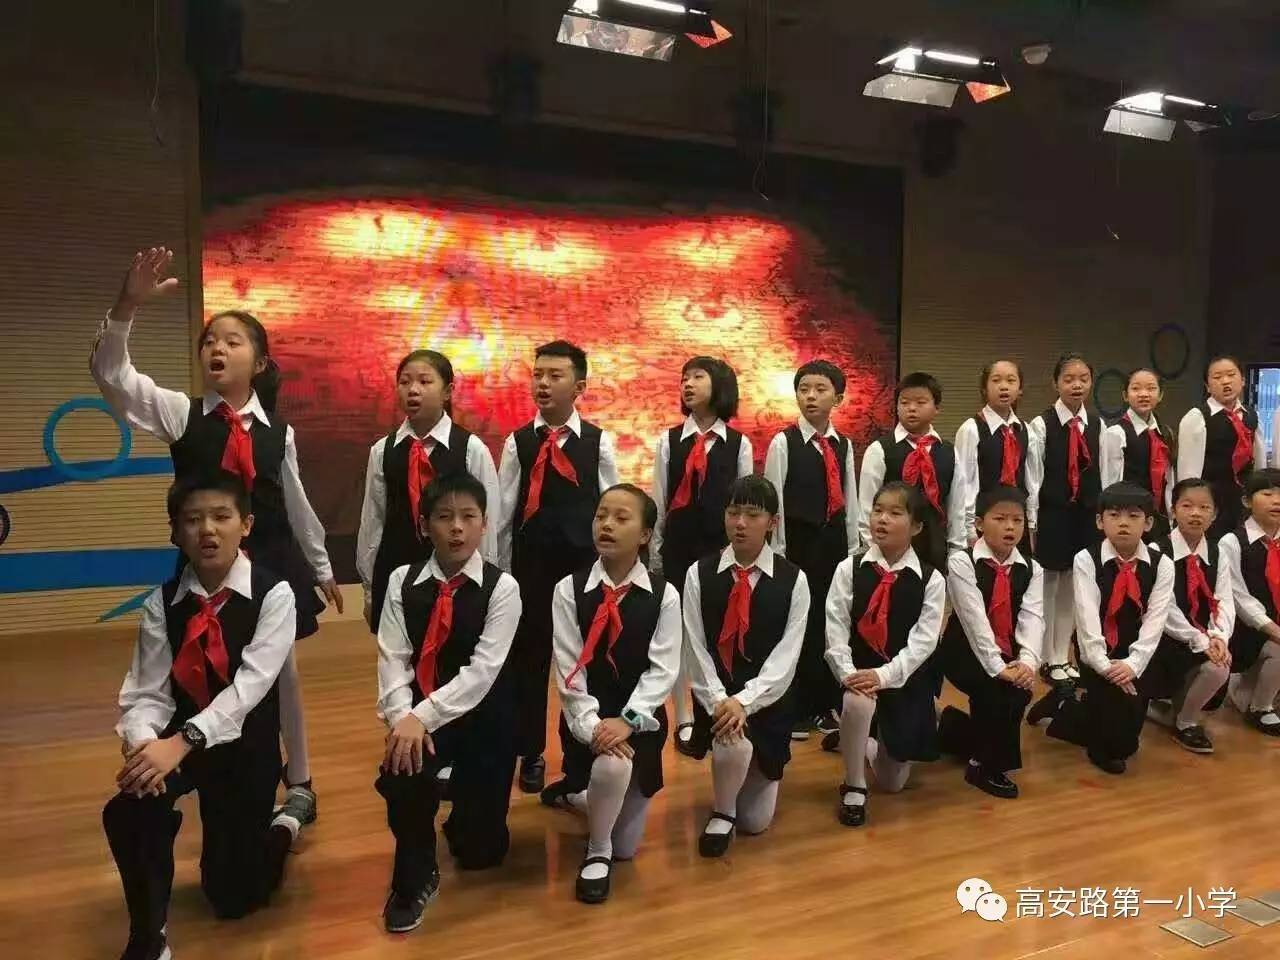 2016年12月布谷鸟合唱团参加徐汇区学生合唱节,首次尝试无伴奏歌曲